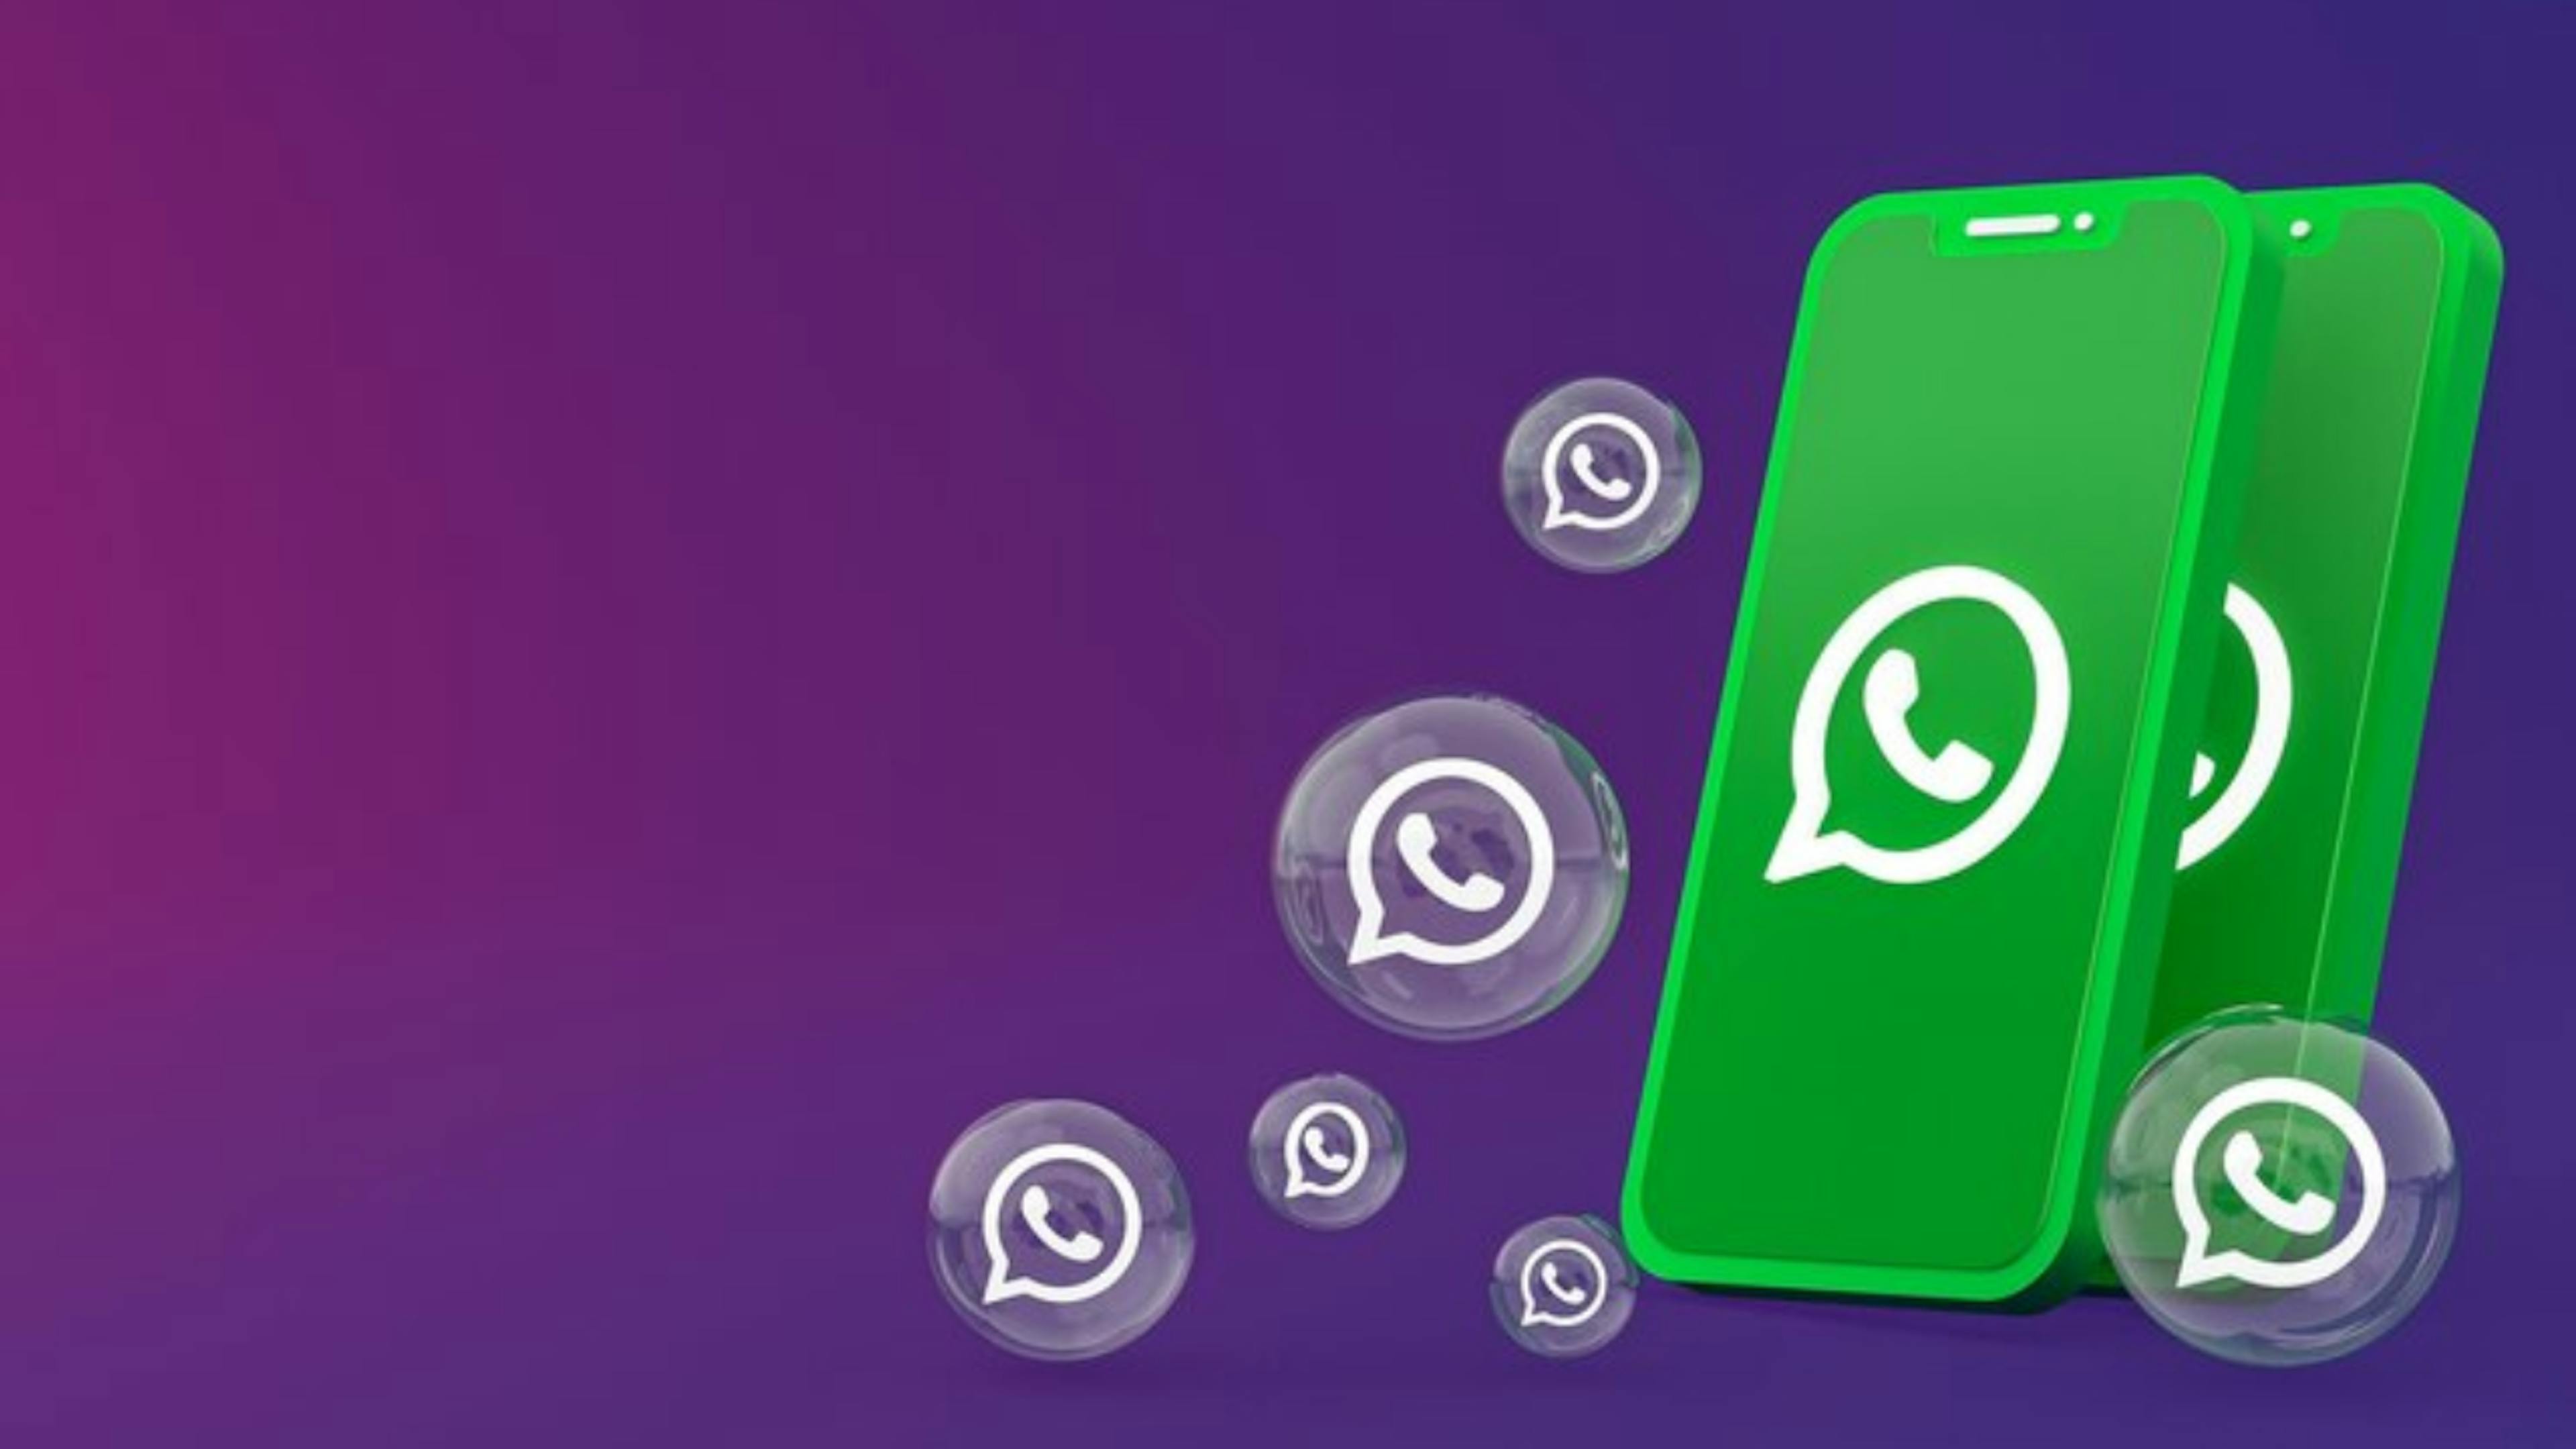 WhatsApp adota verde neon e divide opiniões: entenda a nova interface